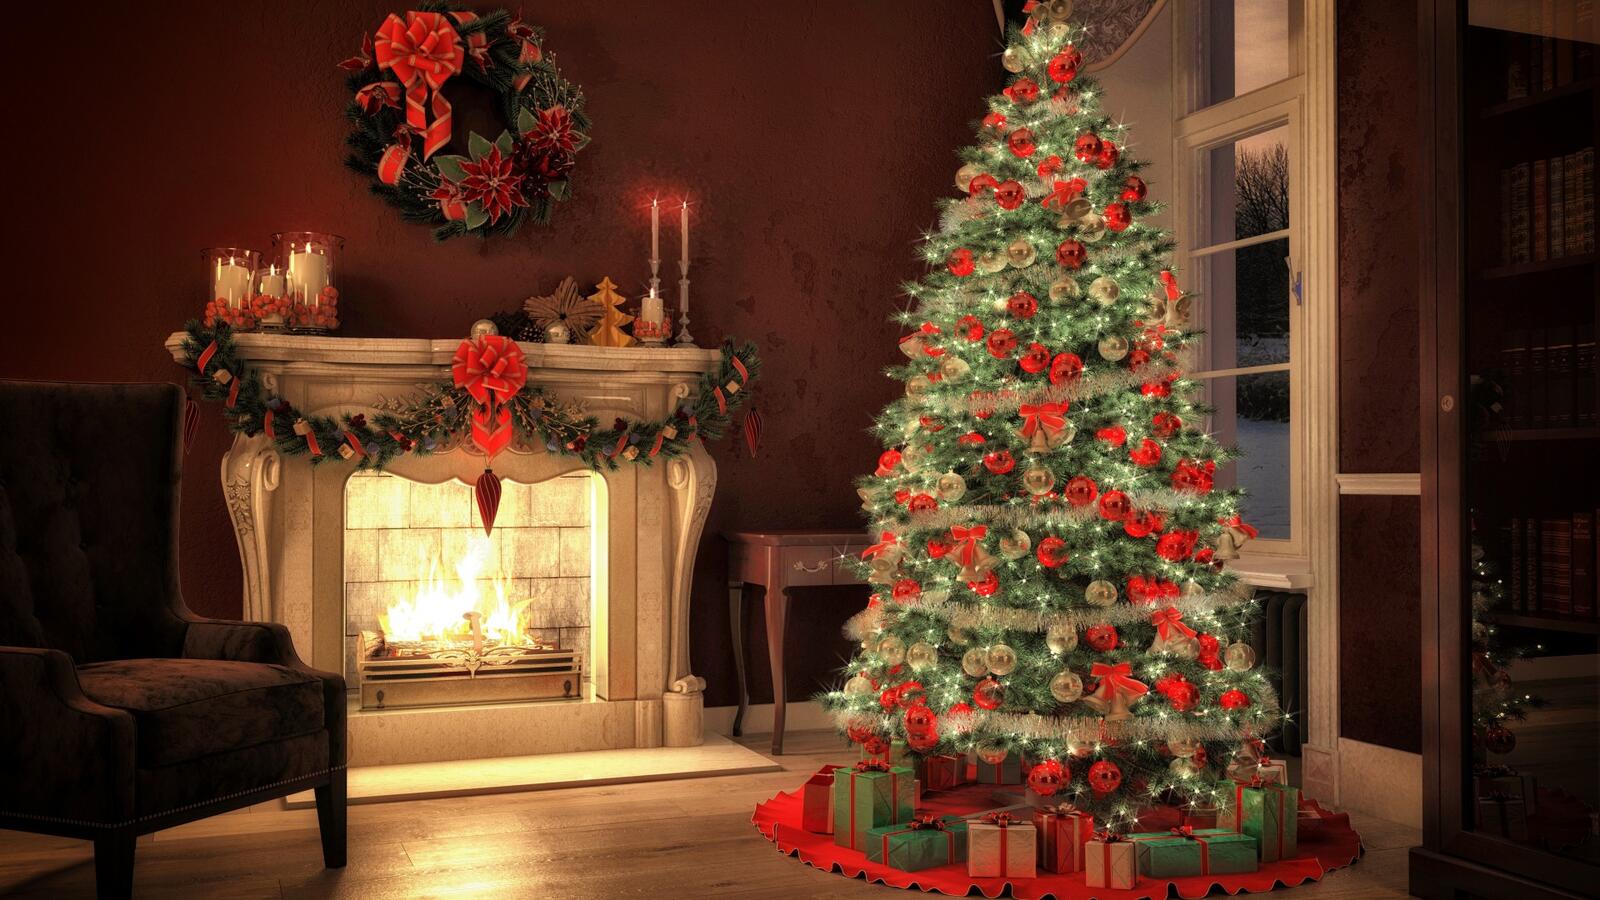 免费照片壁炉旁熠熠生辉的圣诞树